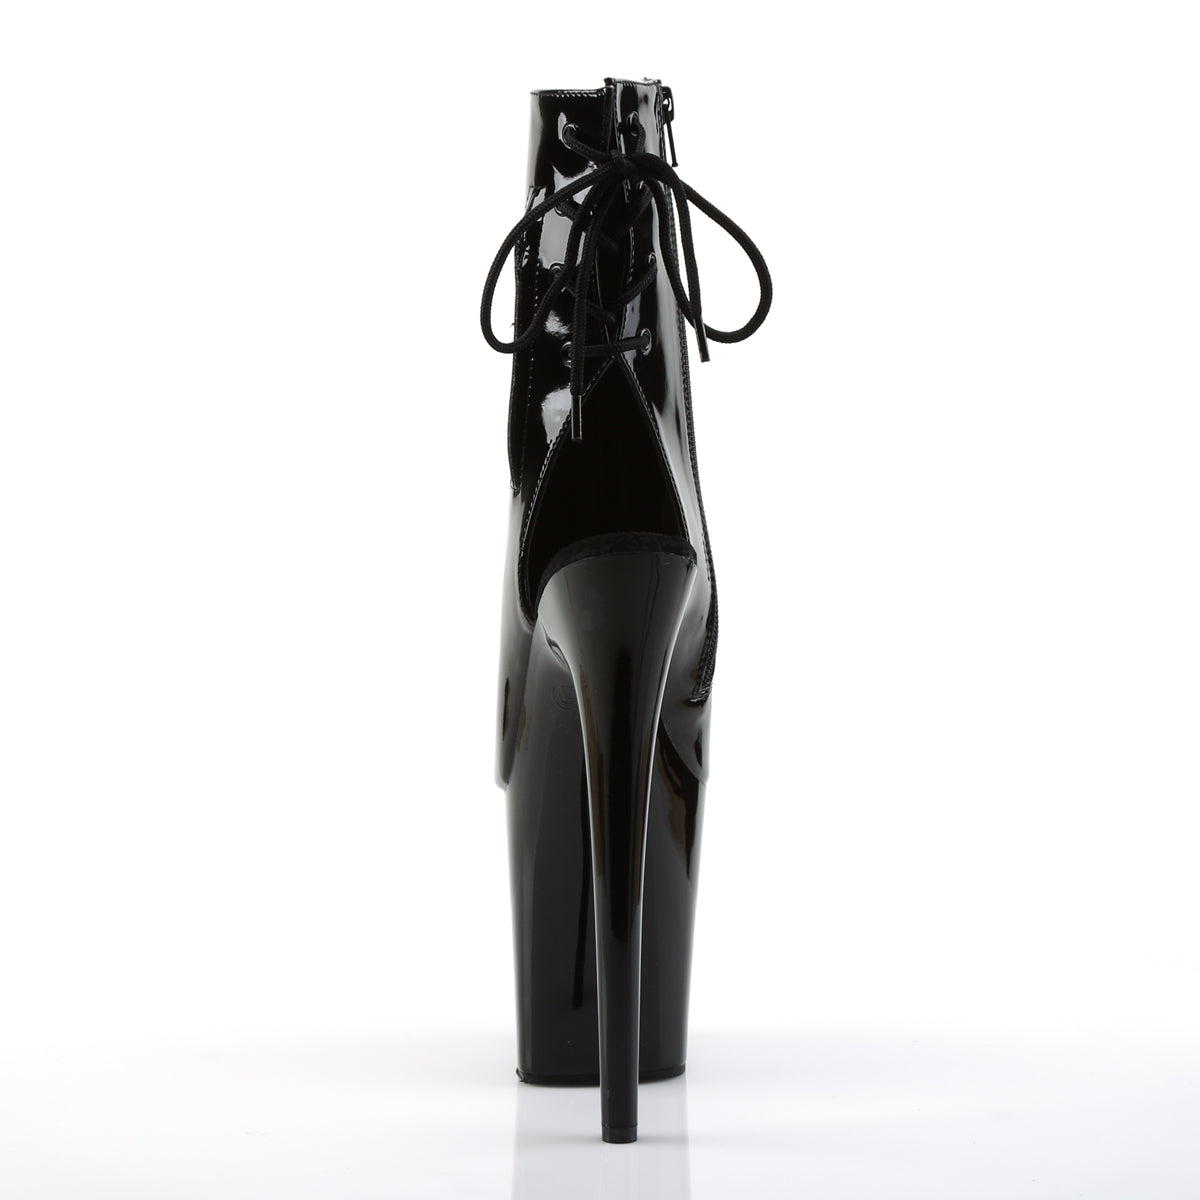 FLAMINGO-1018 Pleaser Black Patent Platform Shoes [Pole Dancing Ankle Boots]